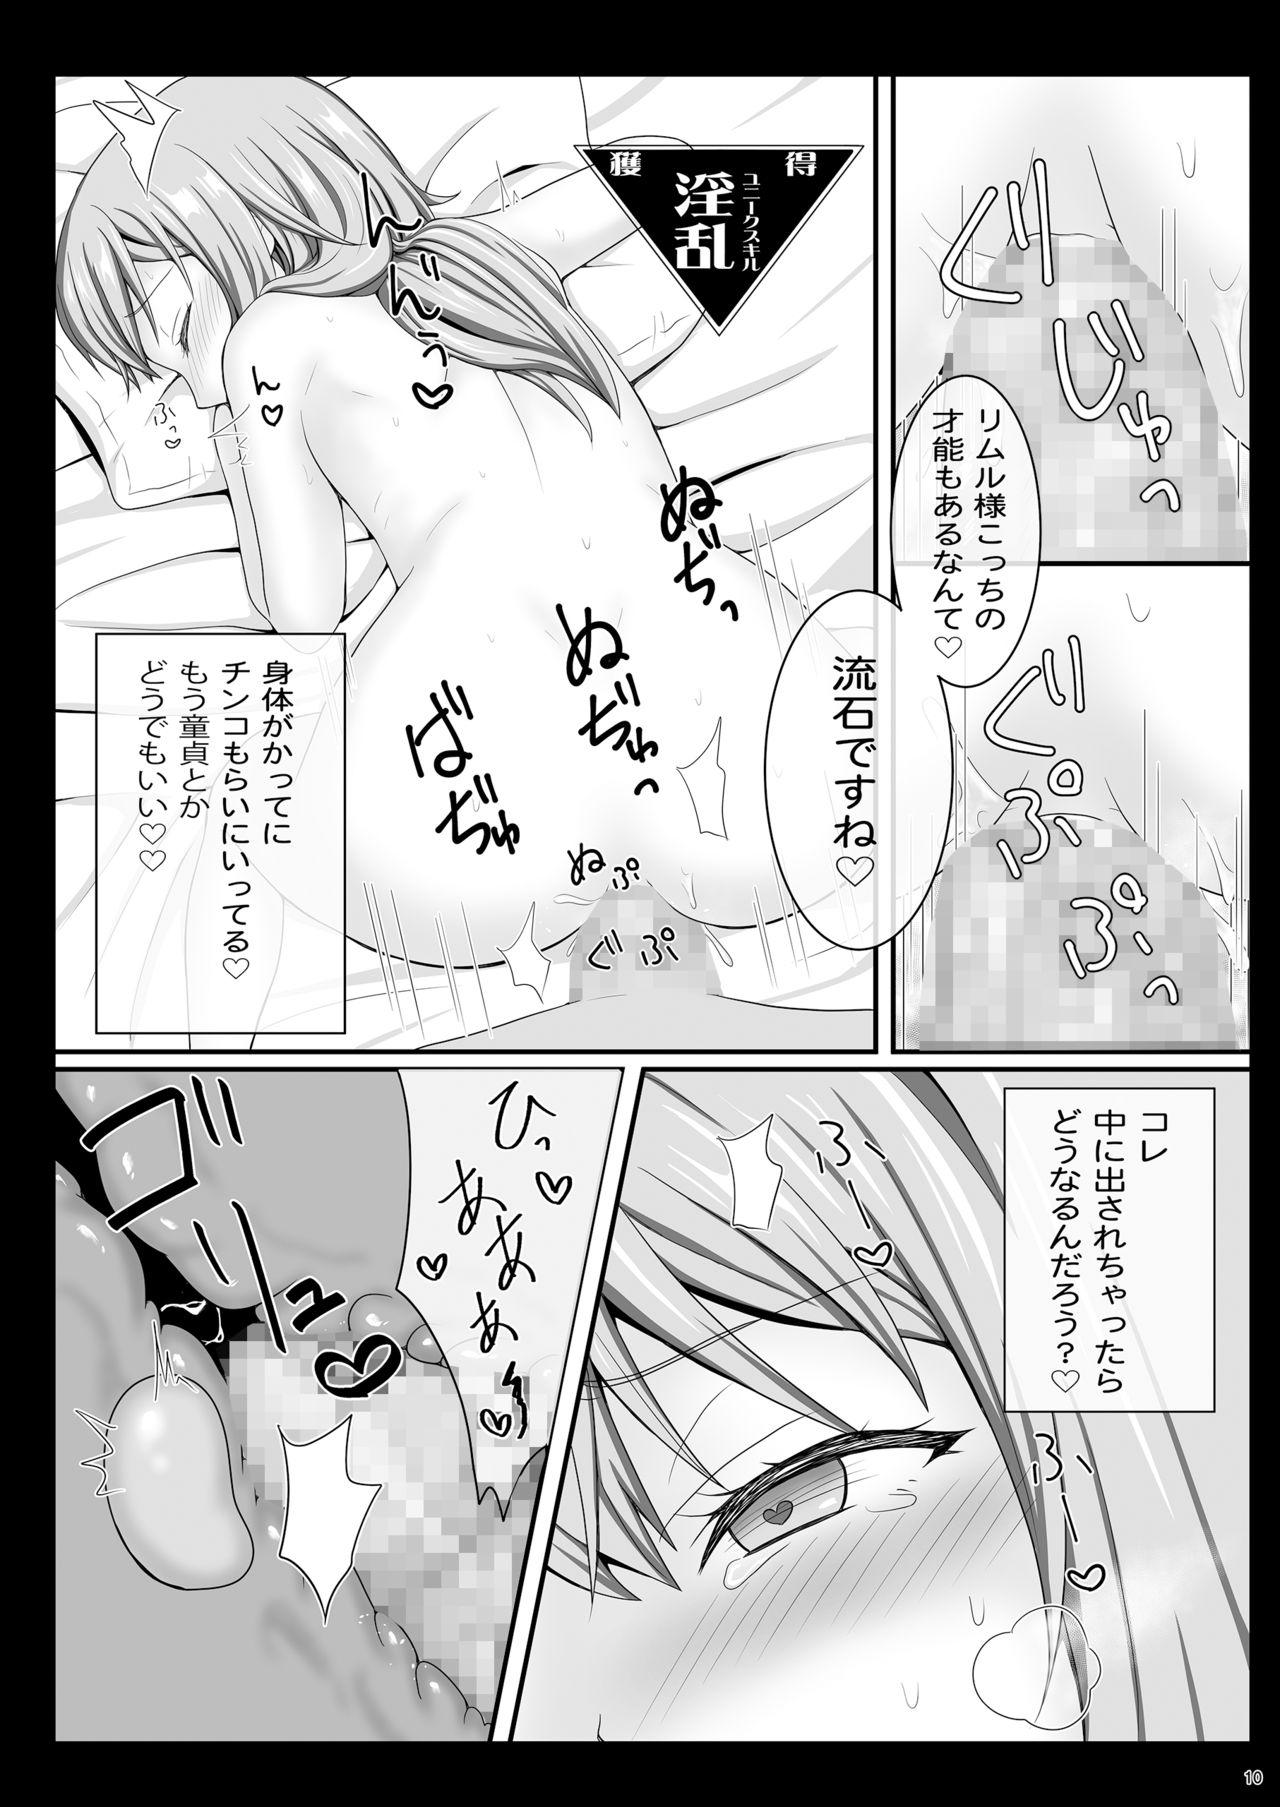 Amateur Blowjob Etchina Rimuru-sama No Matome - Tensei shitara slime datta ken Inked - Page 9